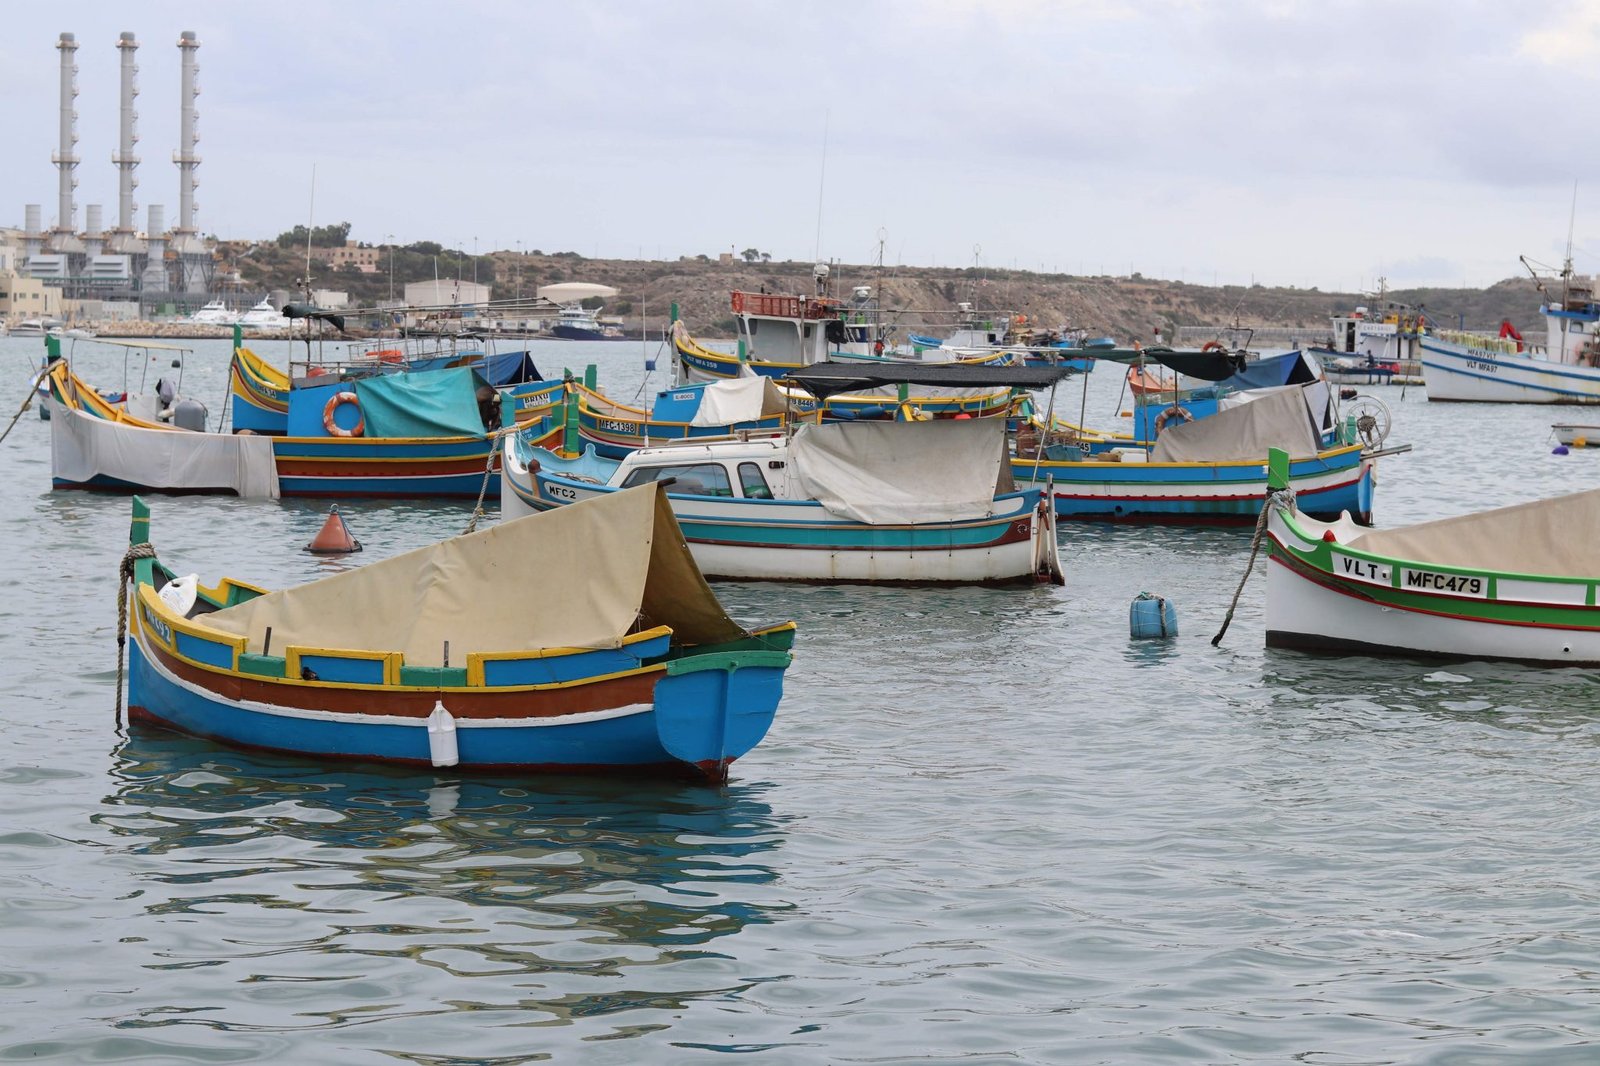 Porto de Pesca, Marsaxlokk